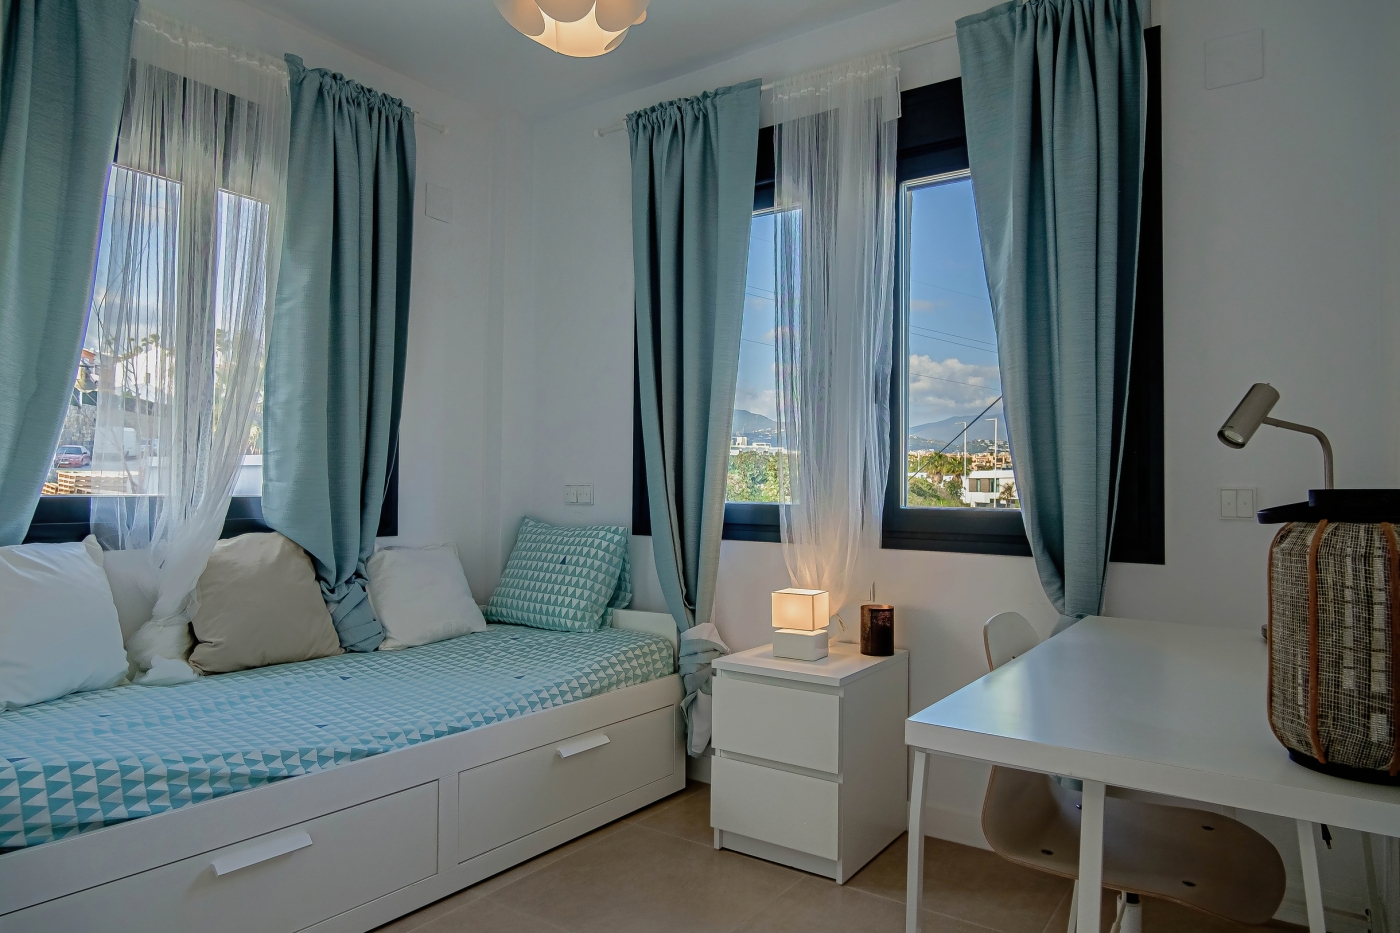 Exclusivo complejo residencial de adosadas en pleno corazón del golf de la Costa del Sol